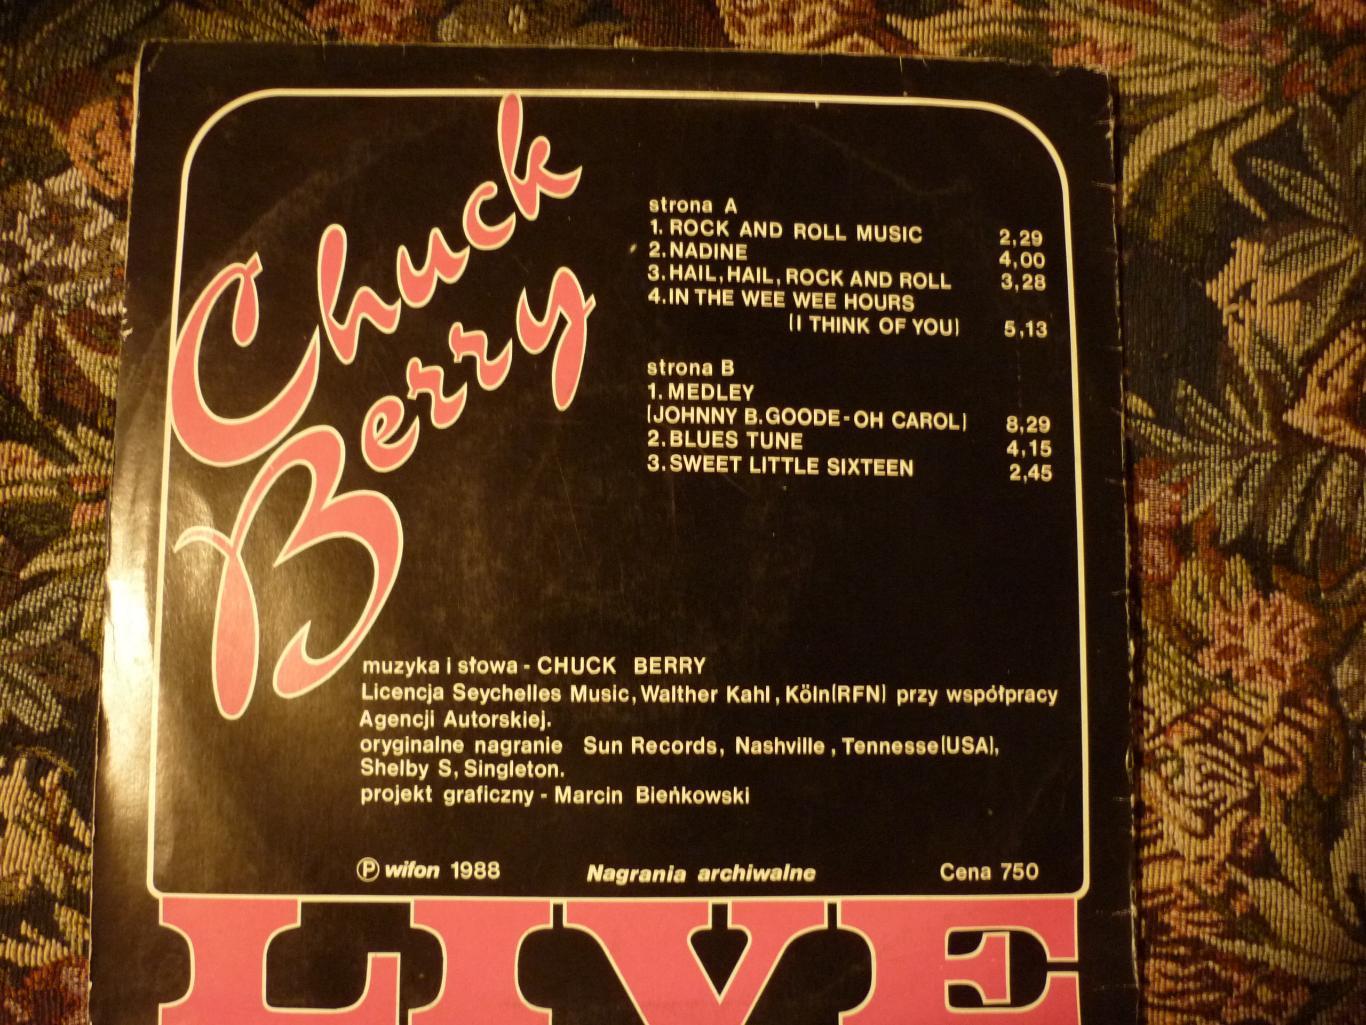 Пластинка-винил Чак Берри (Chuck Berry) 1